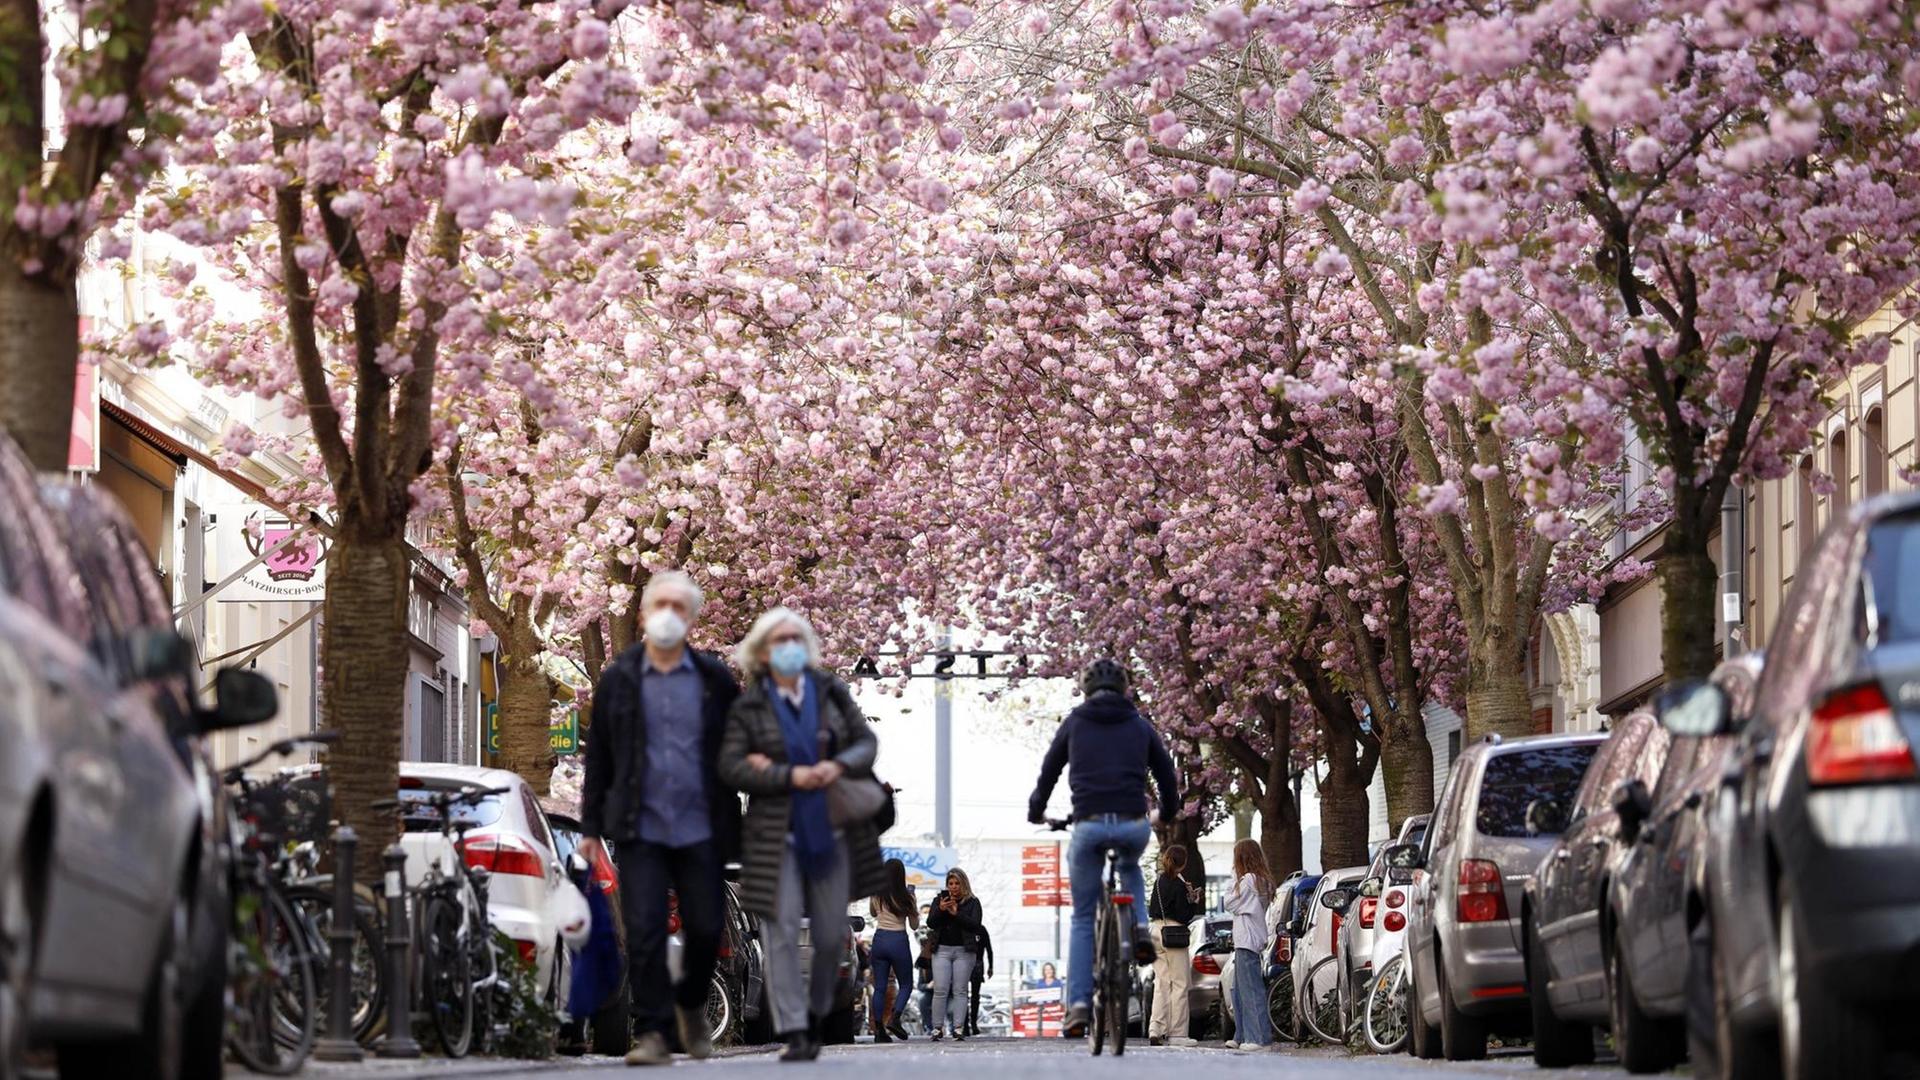 Passanten, Anwohner und Touristen bewundern die alljährliche Bonner Kirschblüte in der Bonner Altstadt rund um die Heerstraße. In diesem Jahr darf das Naturschauspiel nur unter Einhaltung strenger Corona-Maßnahmen beobachtet werden.